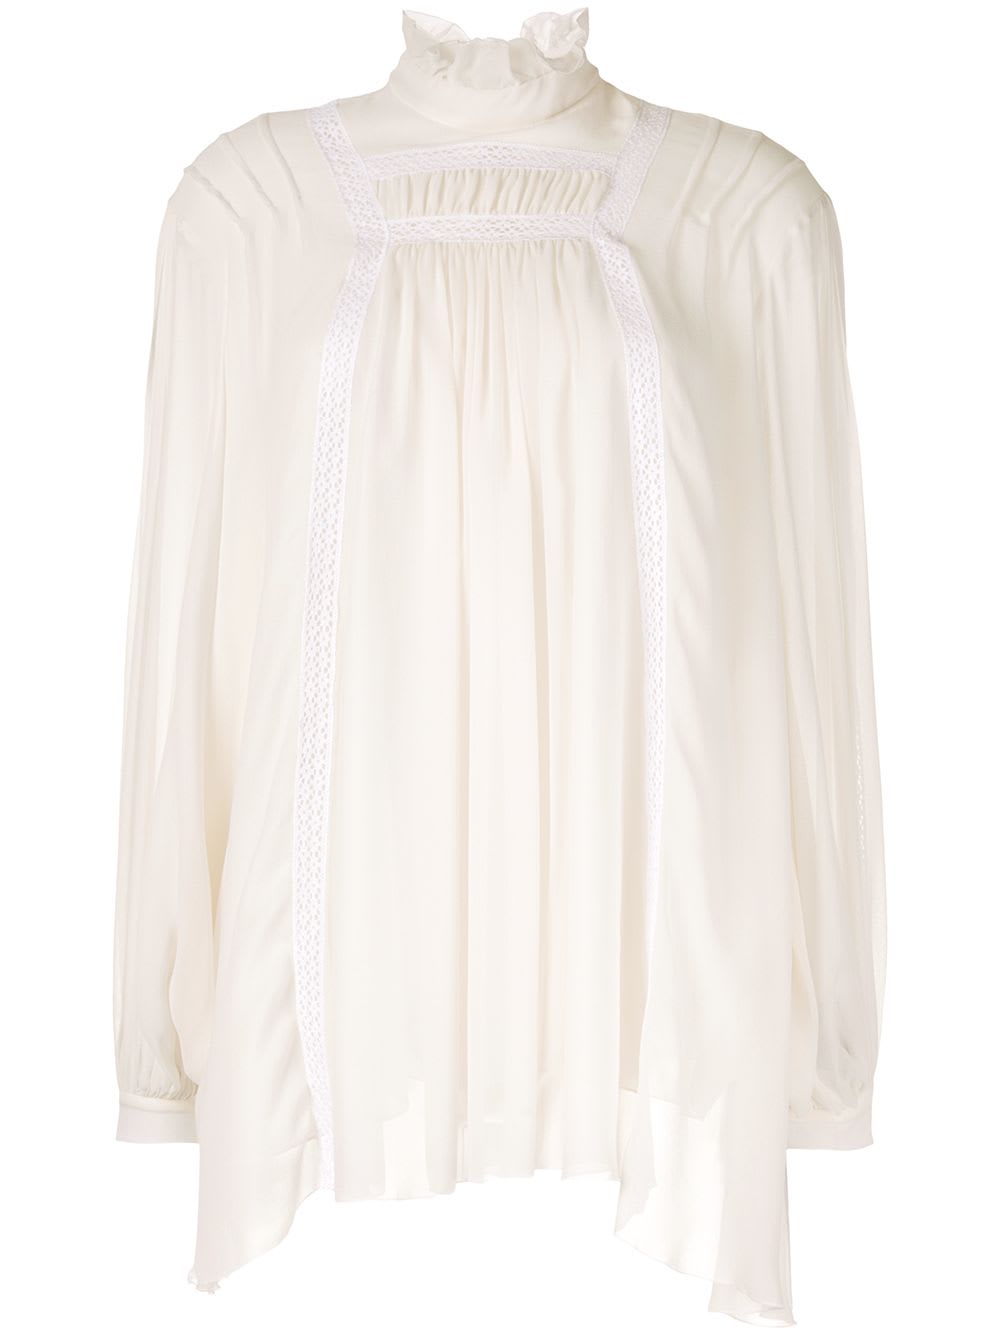 Giambattista Valli Ivory Silk Bouse With White Laces